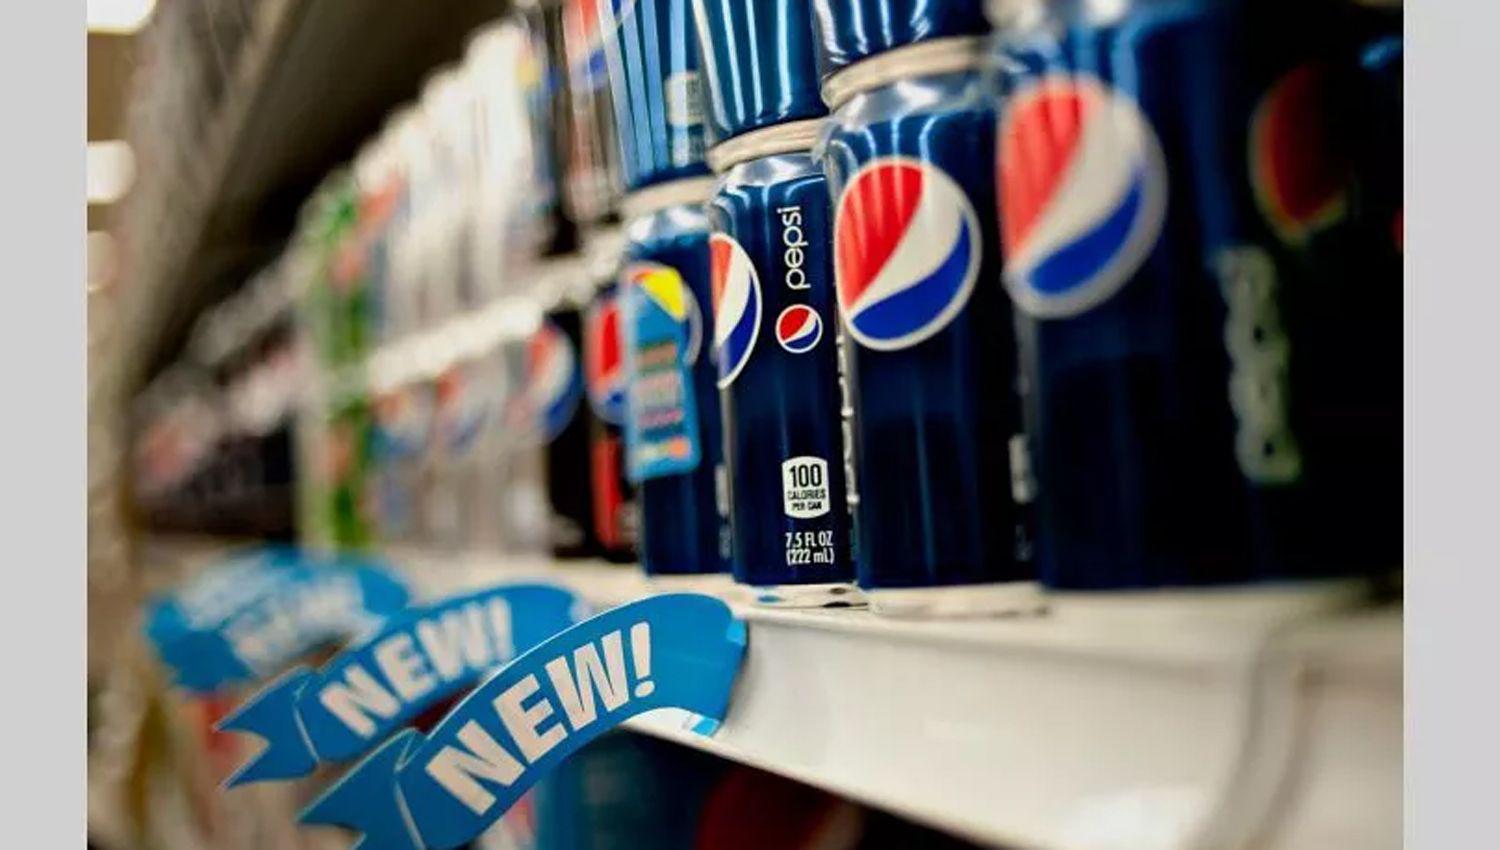 Pepsi compra Rockstar Energy por us 3850 millones y entra al mercado de bebidas energizantes